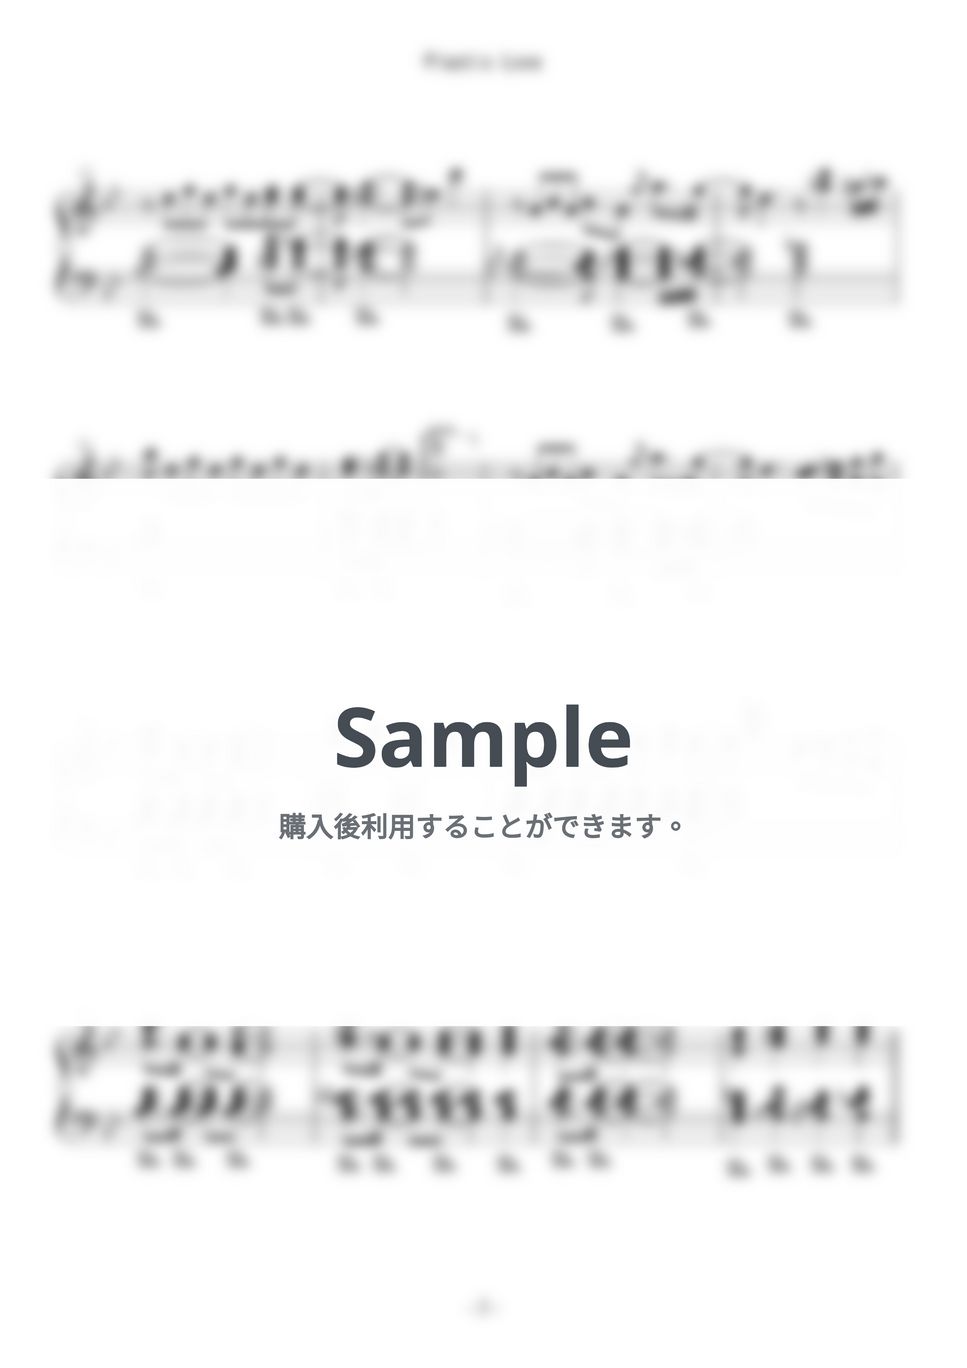 竹内 まりや - プラスティック・ラブ (ピアノトリオ - ジャズアレンジ) by 音楽音泉